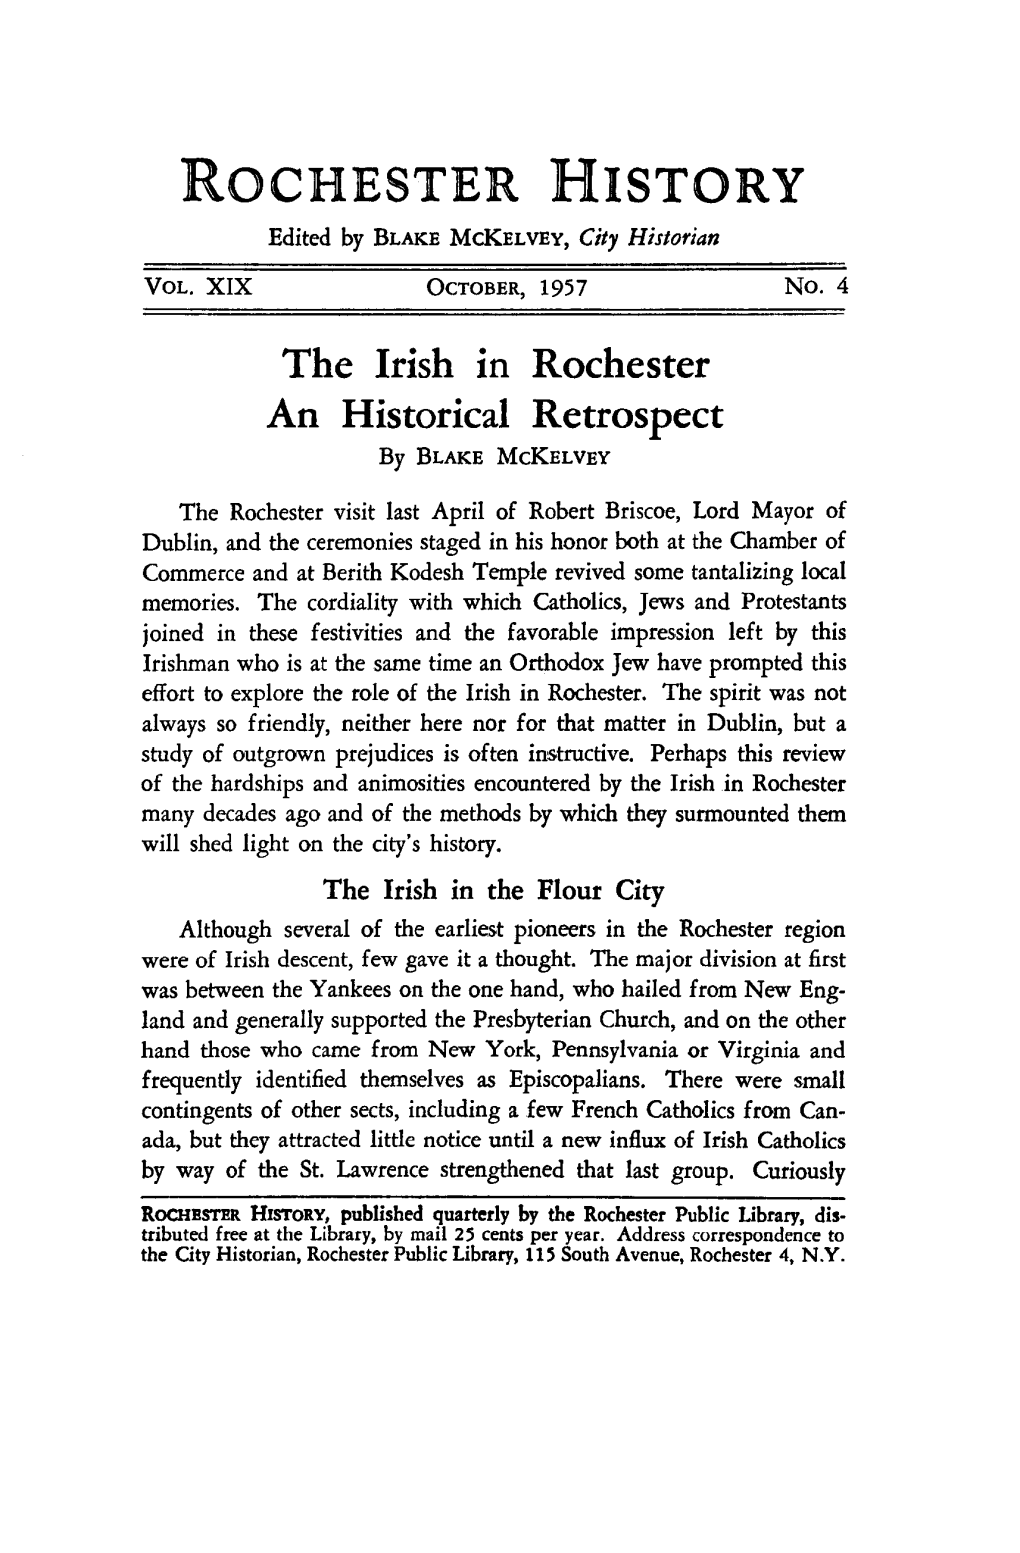 The Irish in Rochester a Historical Retrospect